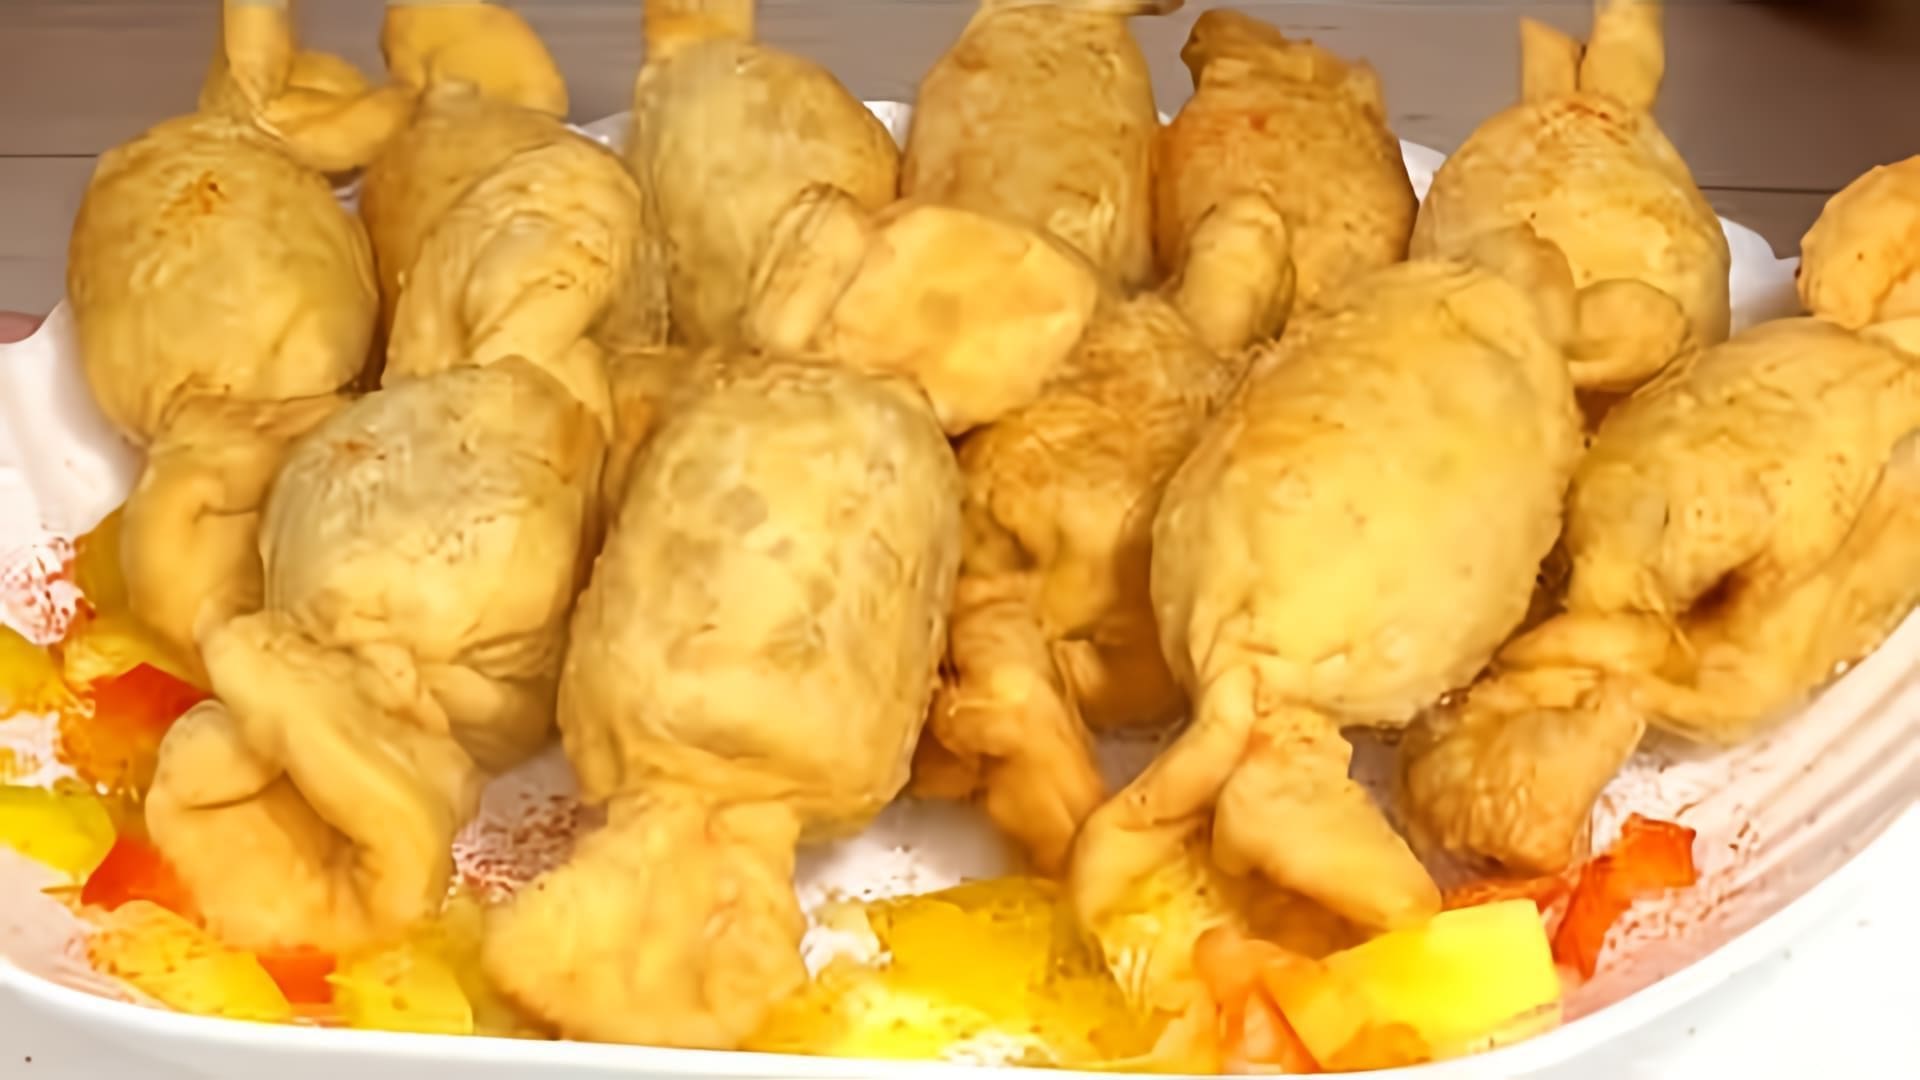 В этом видео демонстрируется процесс приготовления закуски на новогодний стол - сосиски в тесте, которые выглядят как конфетки